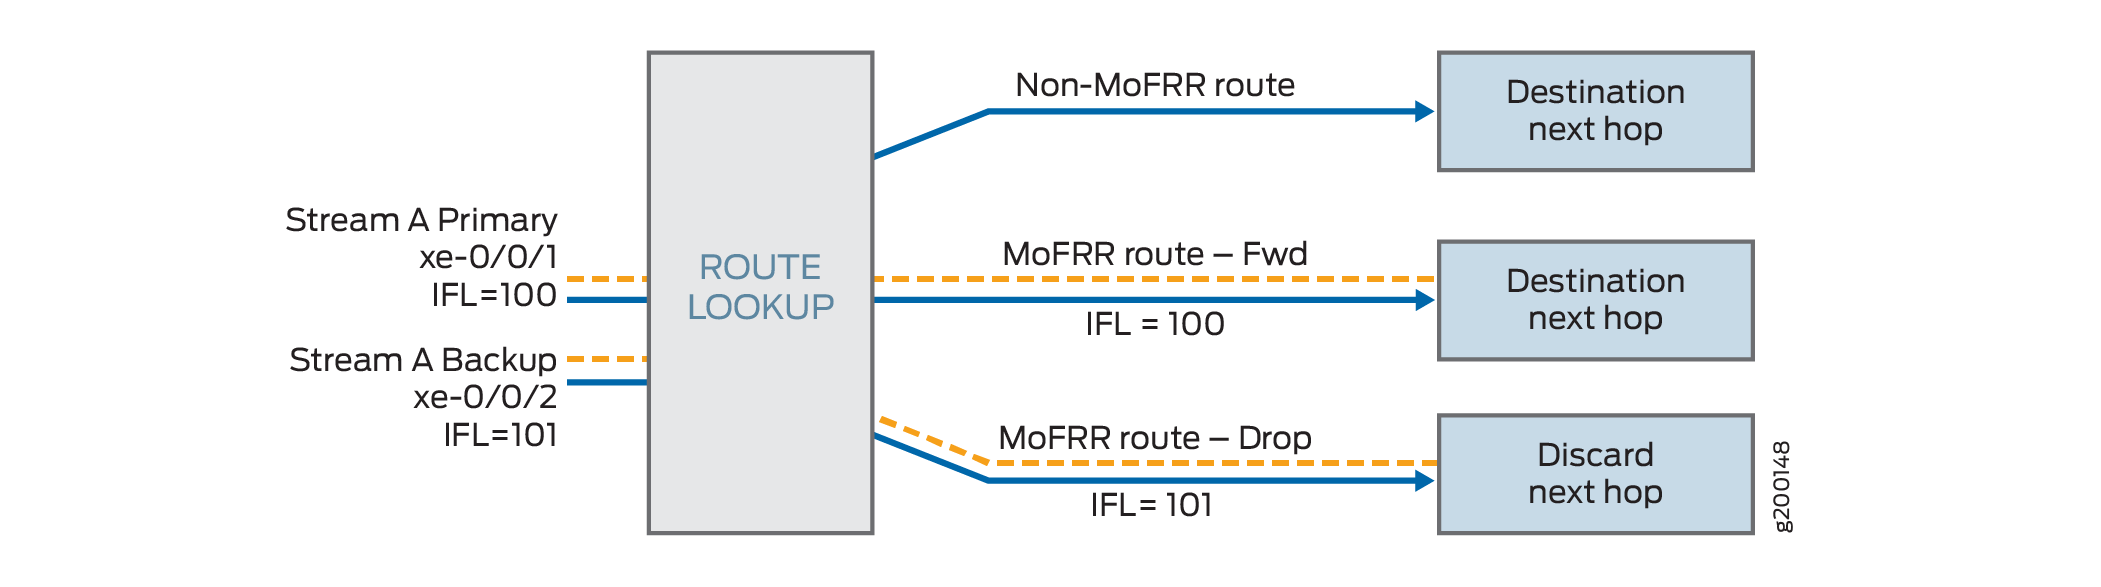 スイッチのパケット転送エンジンにおけるMoFRR IP ルートの取り扱いについて